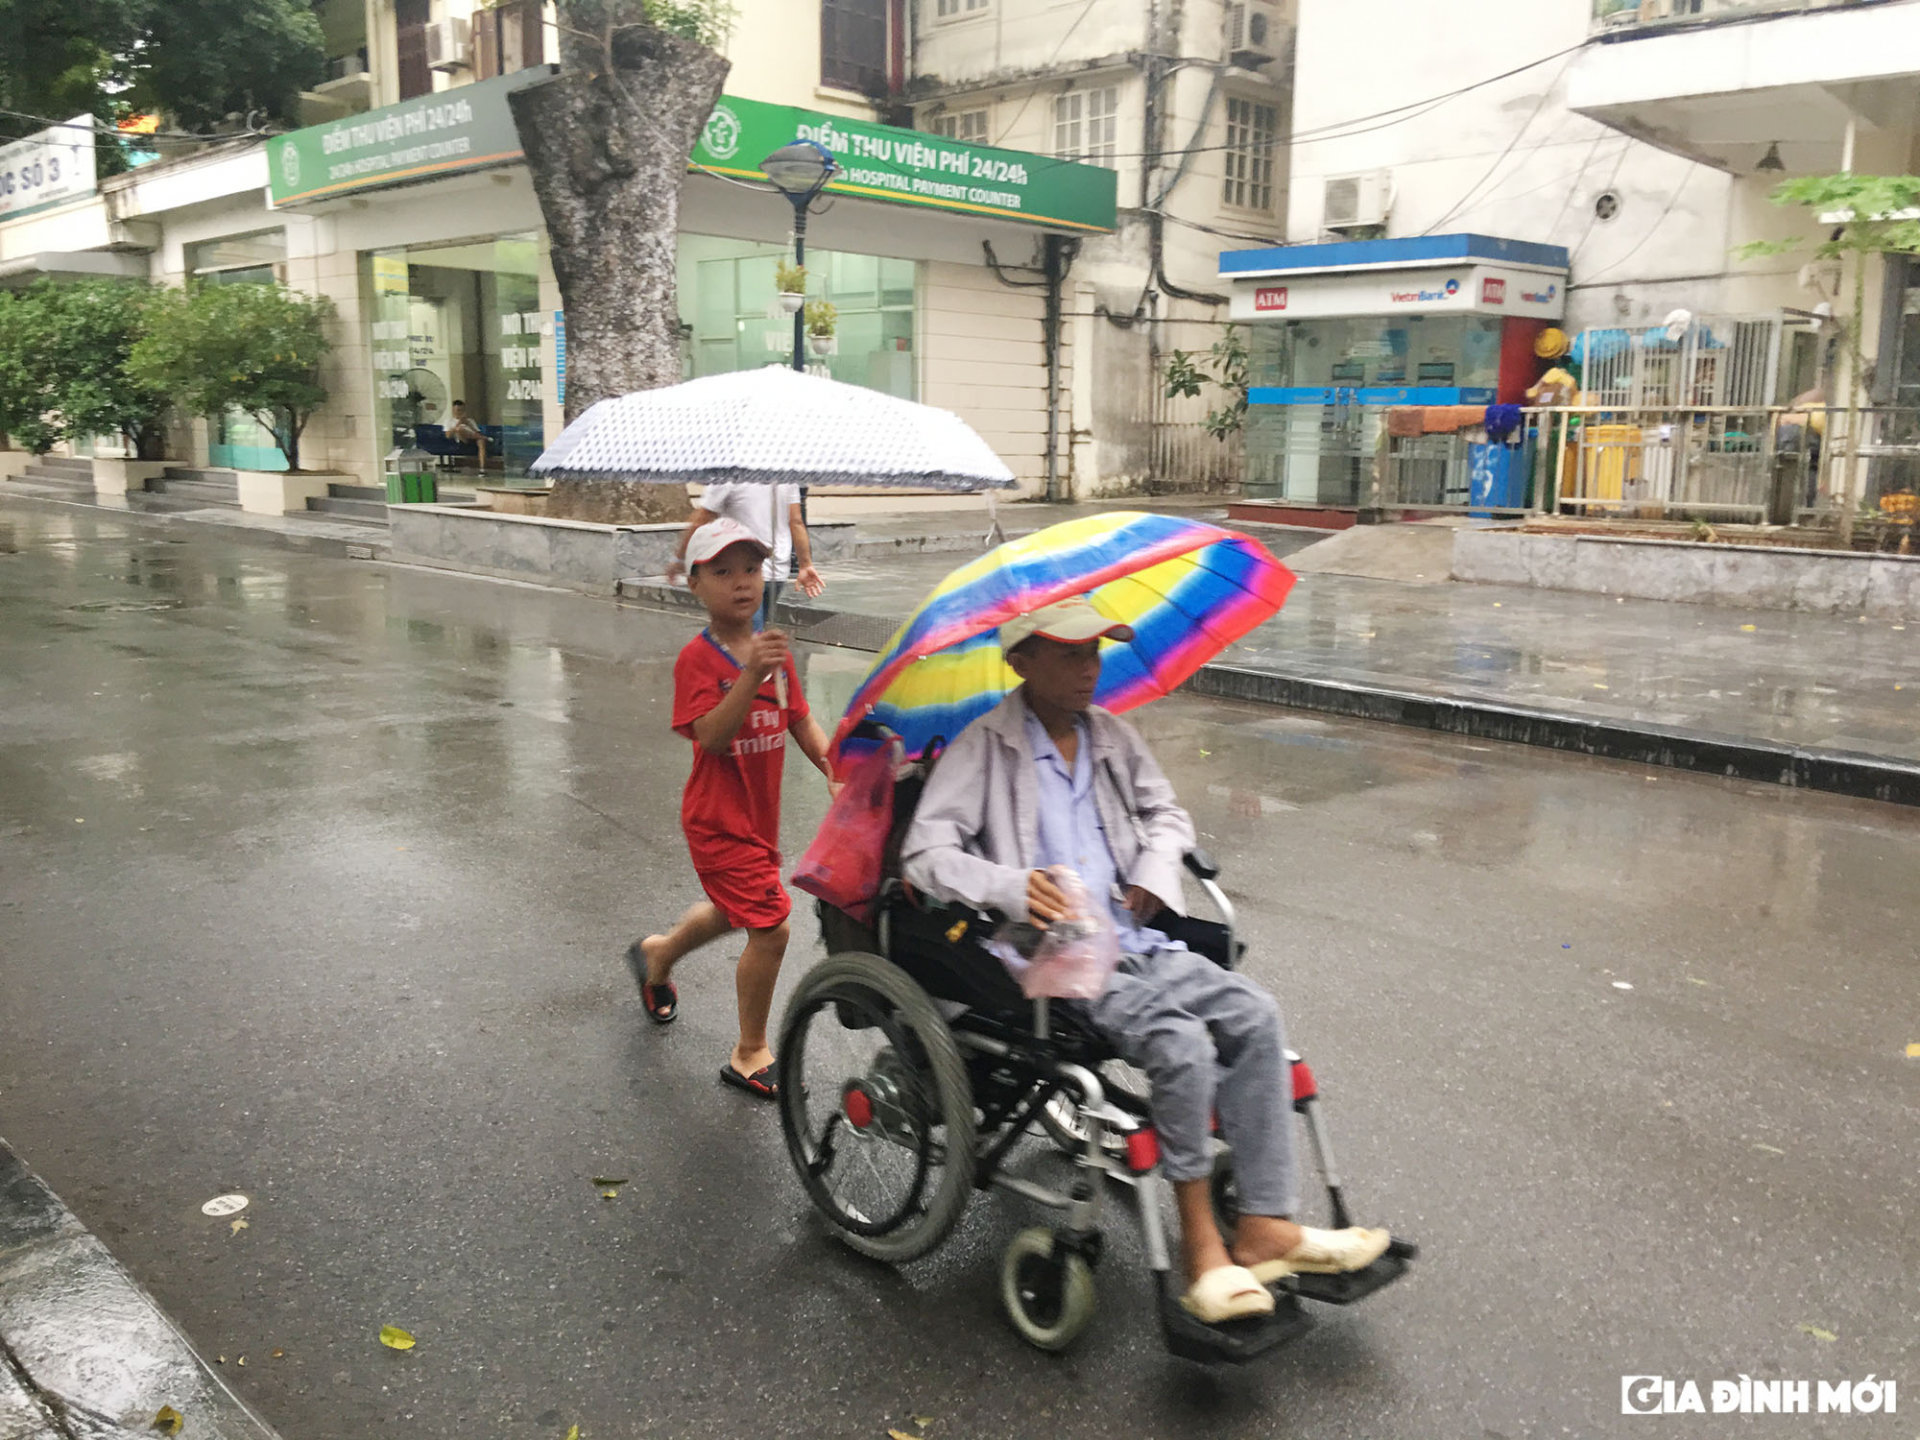 Ngày nắng cũng như ngày mưa, Quân luôn đi theo bố mỗi lần đến bệnh viện chạy thận nhân tạo.